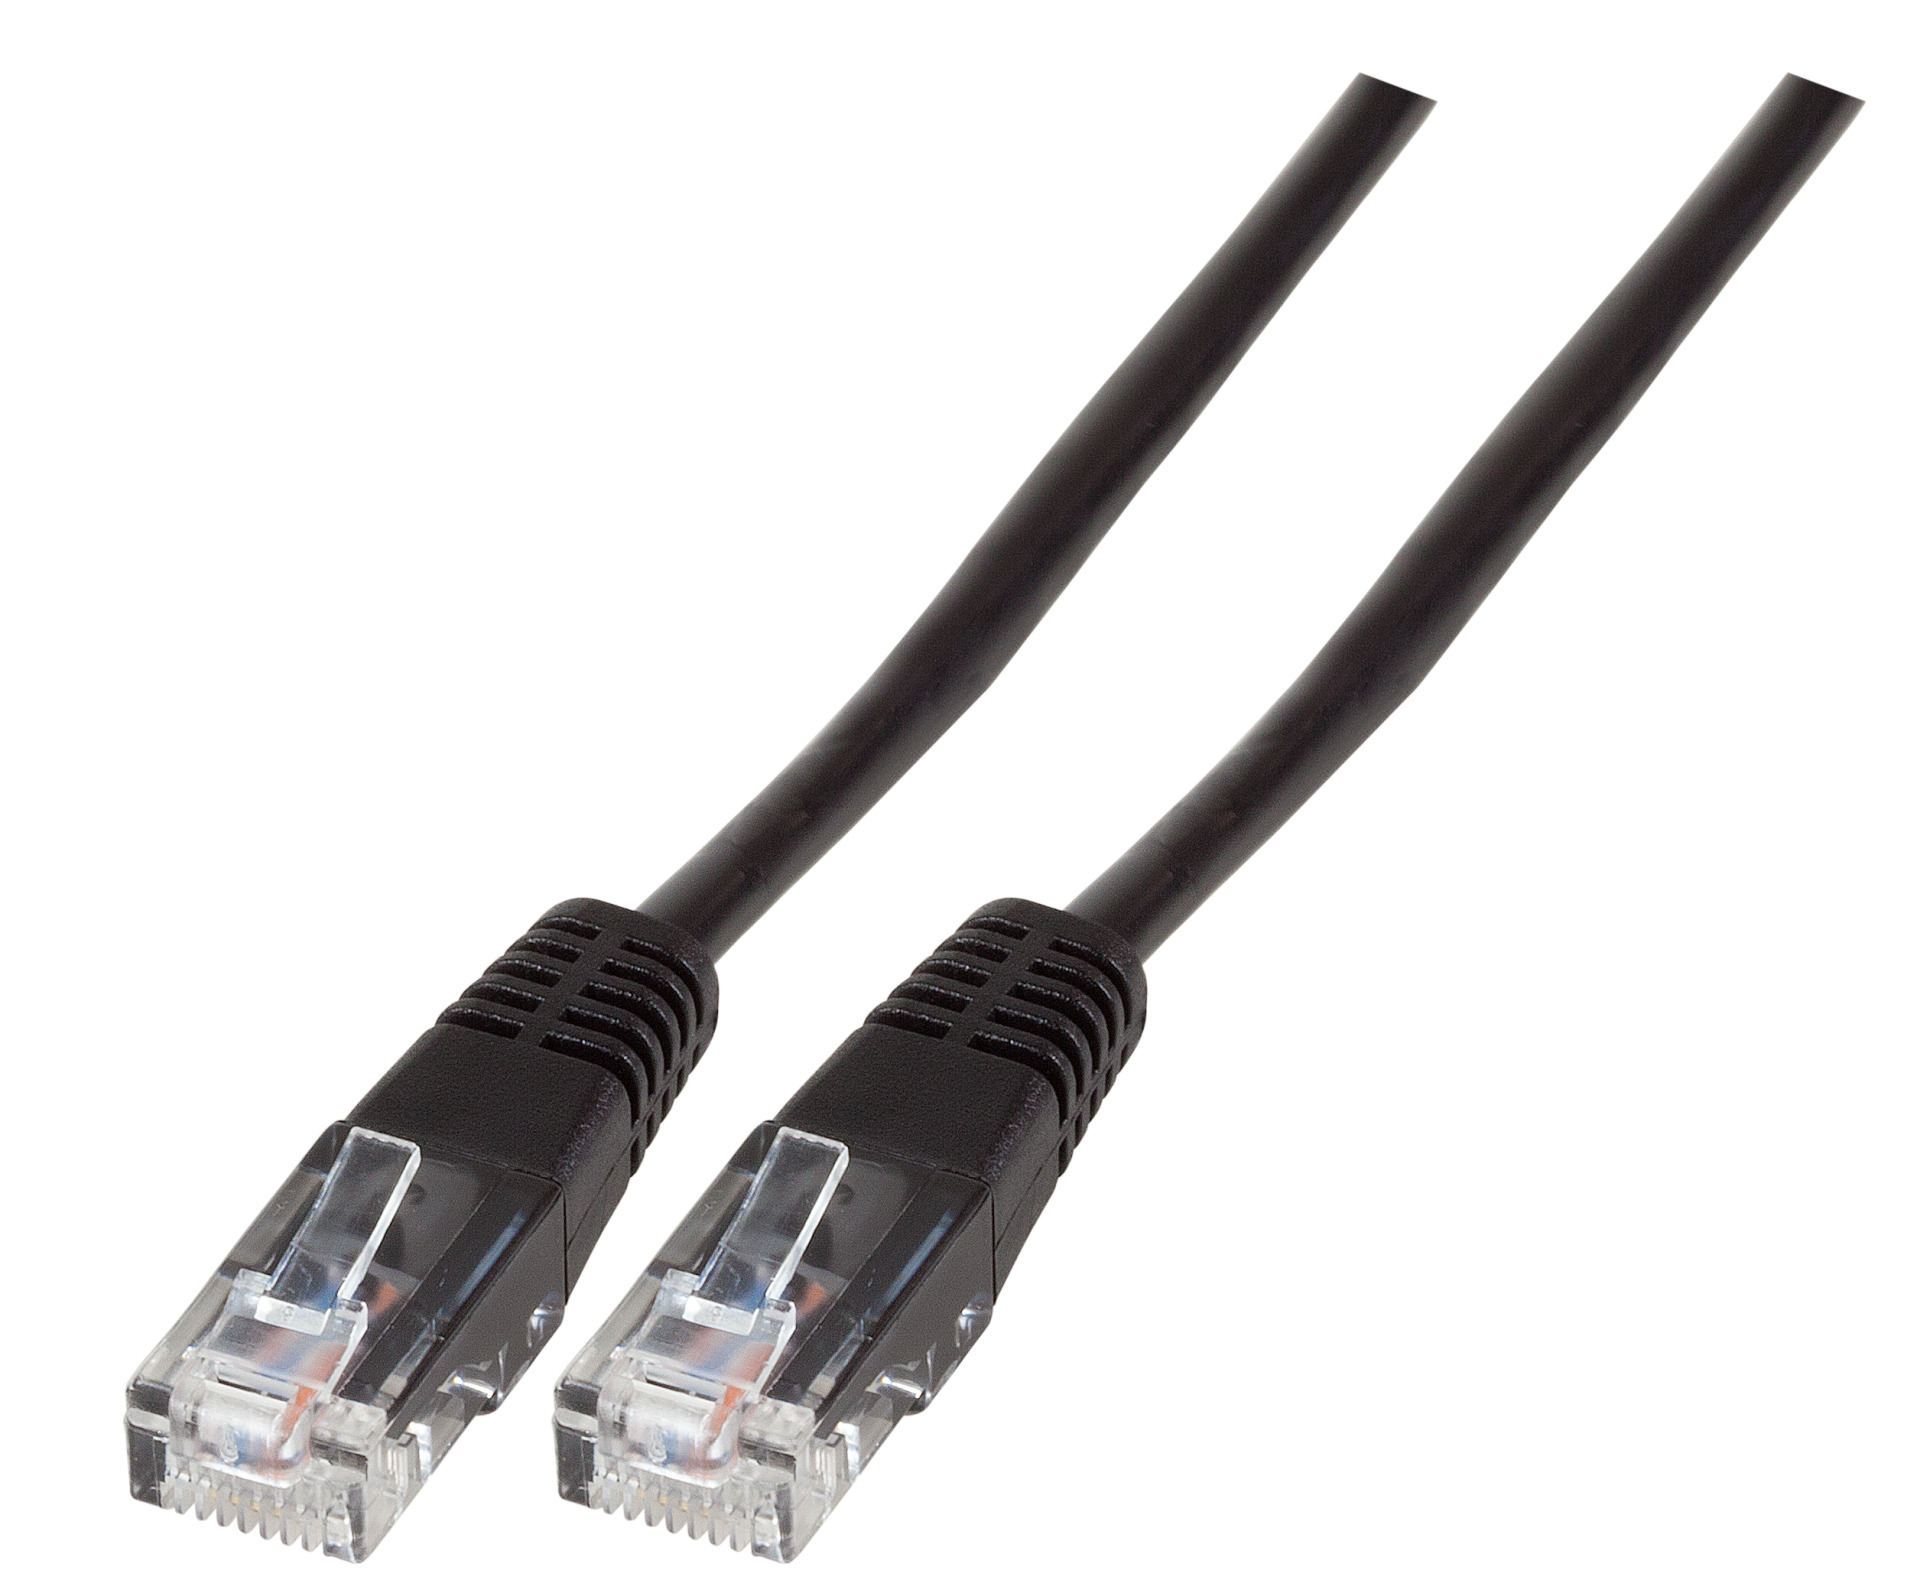 Modular Cable RJ45 (8/4) - RJ45 (8/4), Moulded, Black, 6 m